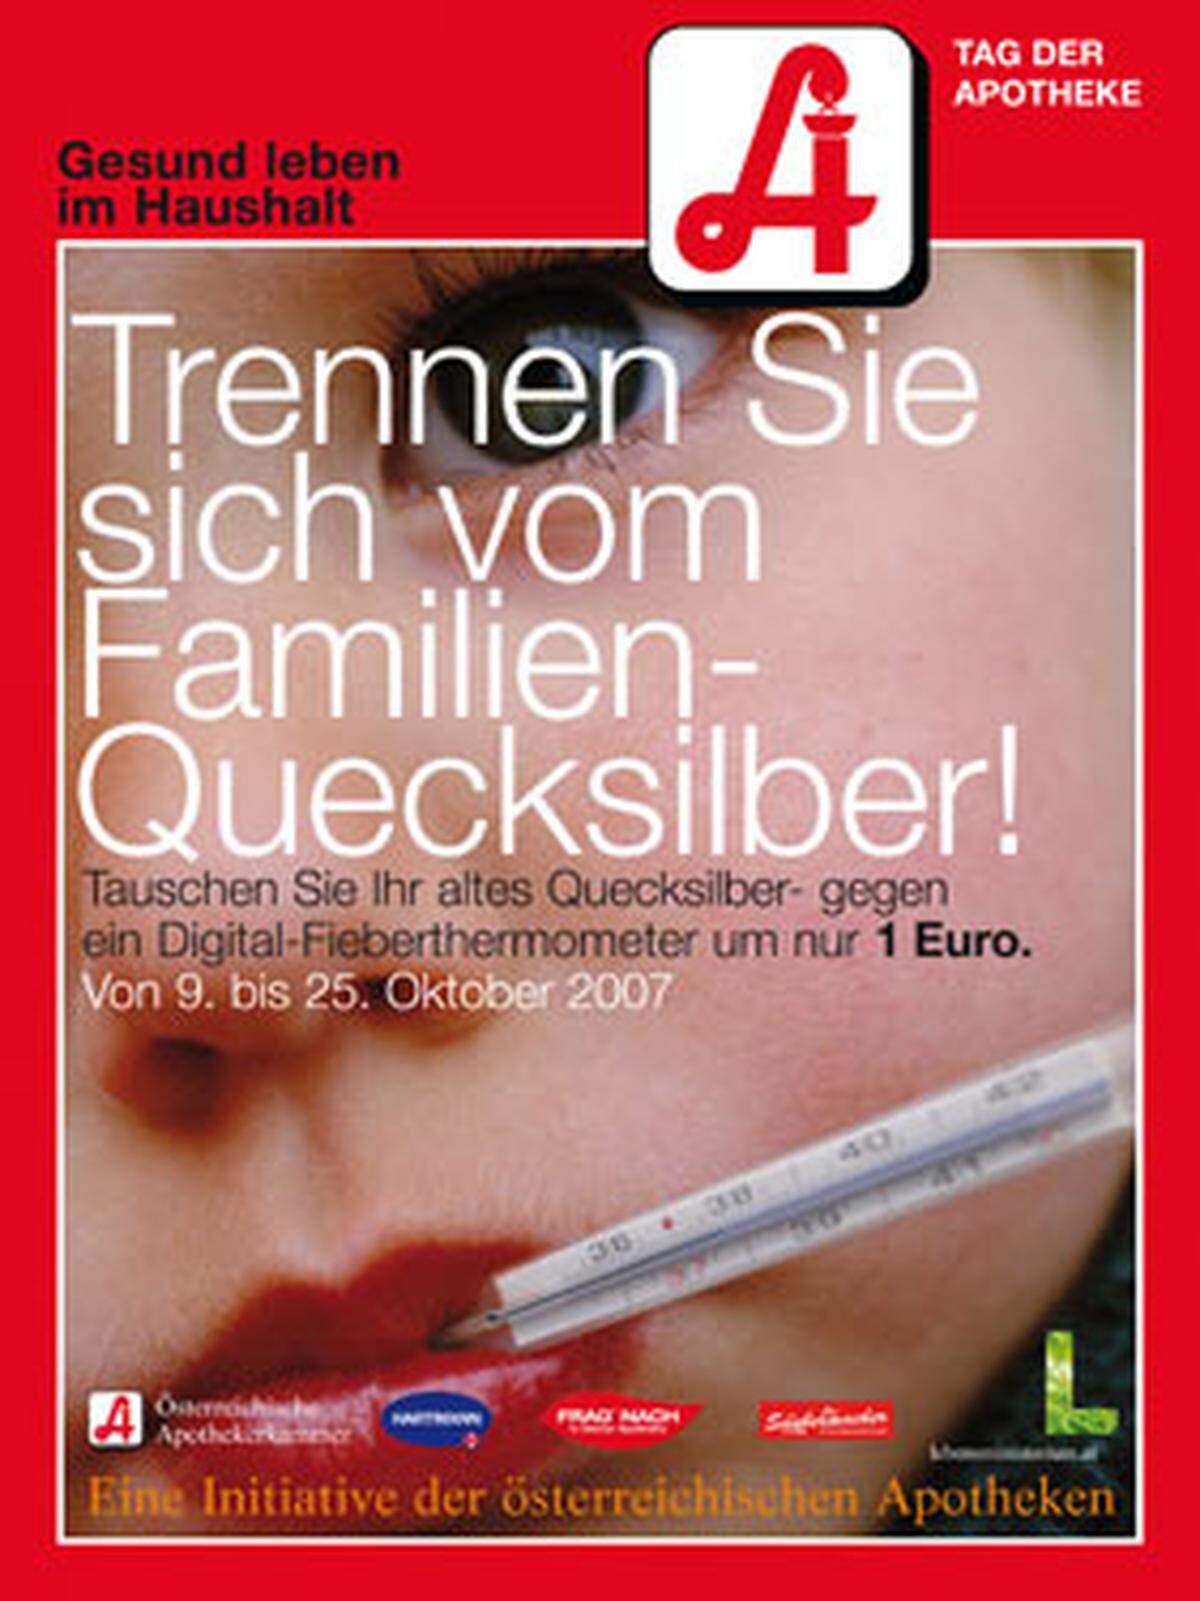 Pharma: "Tag der Apotheke 2007", Österreichische Apothekerkammer, Zehetbauer/Salzer Werbeagentur